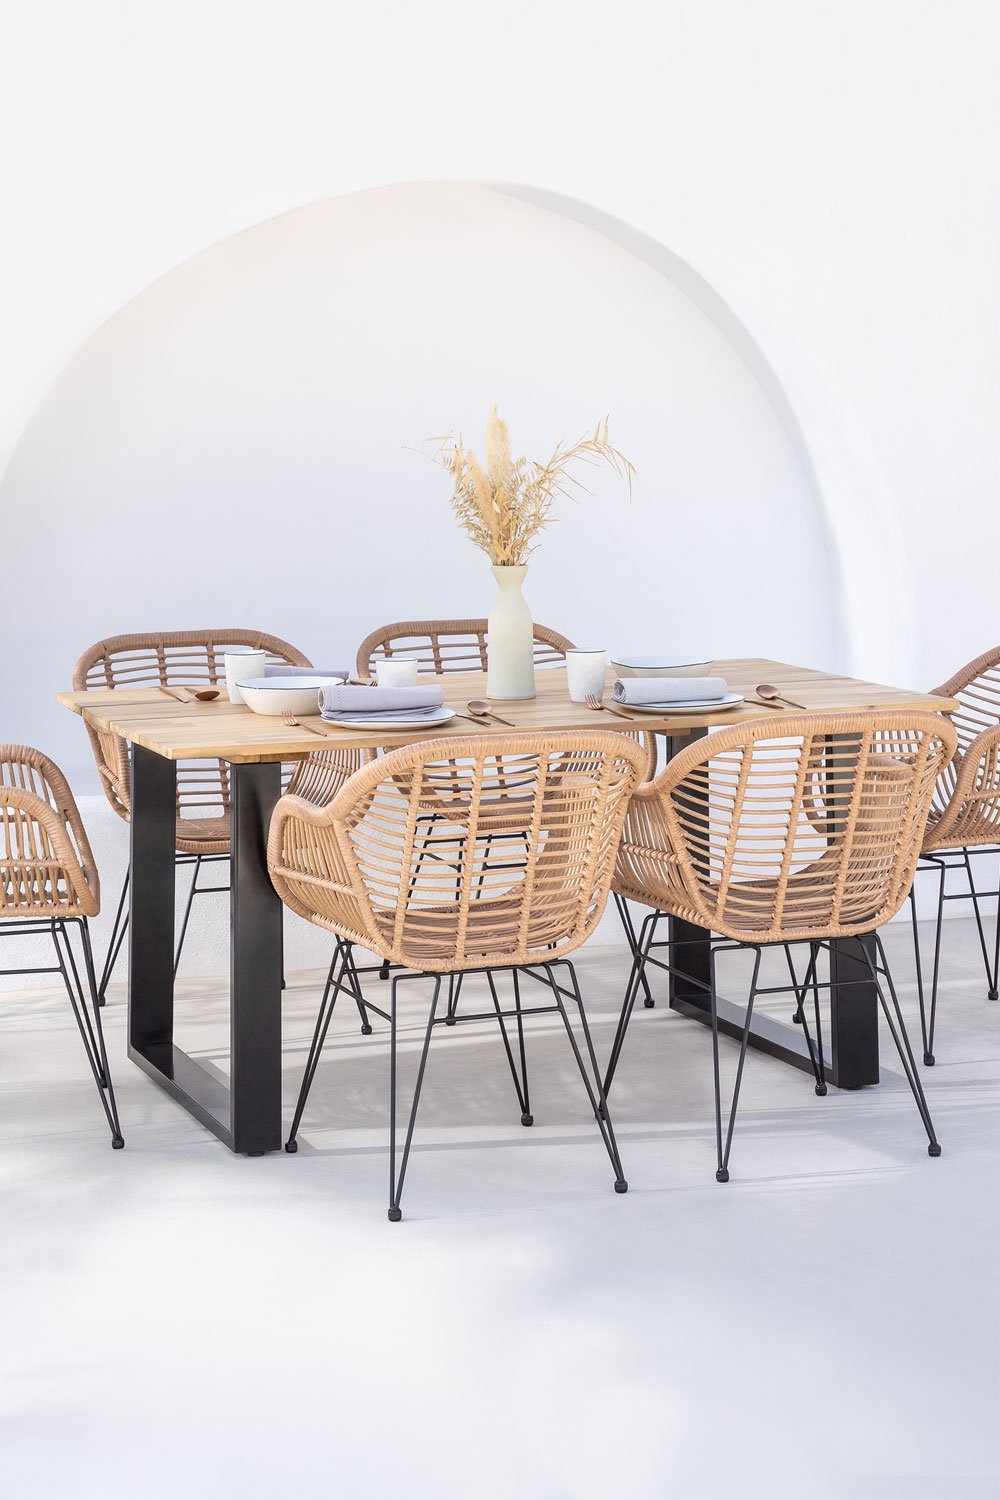 Ensemble table rectangulaire en bois (160x90 cm) Melina et 6 chaises de jardin en rotin synthétique Zole, image de la galerie 1